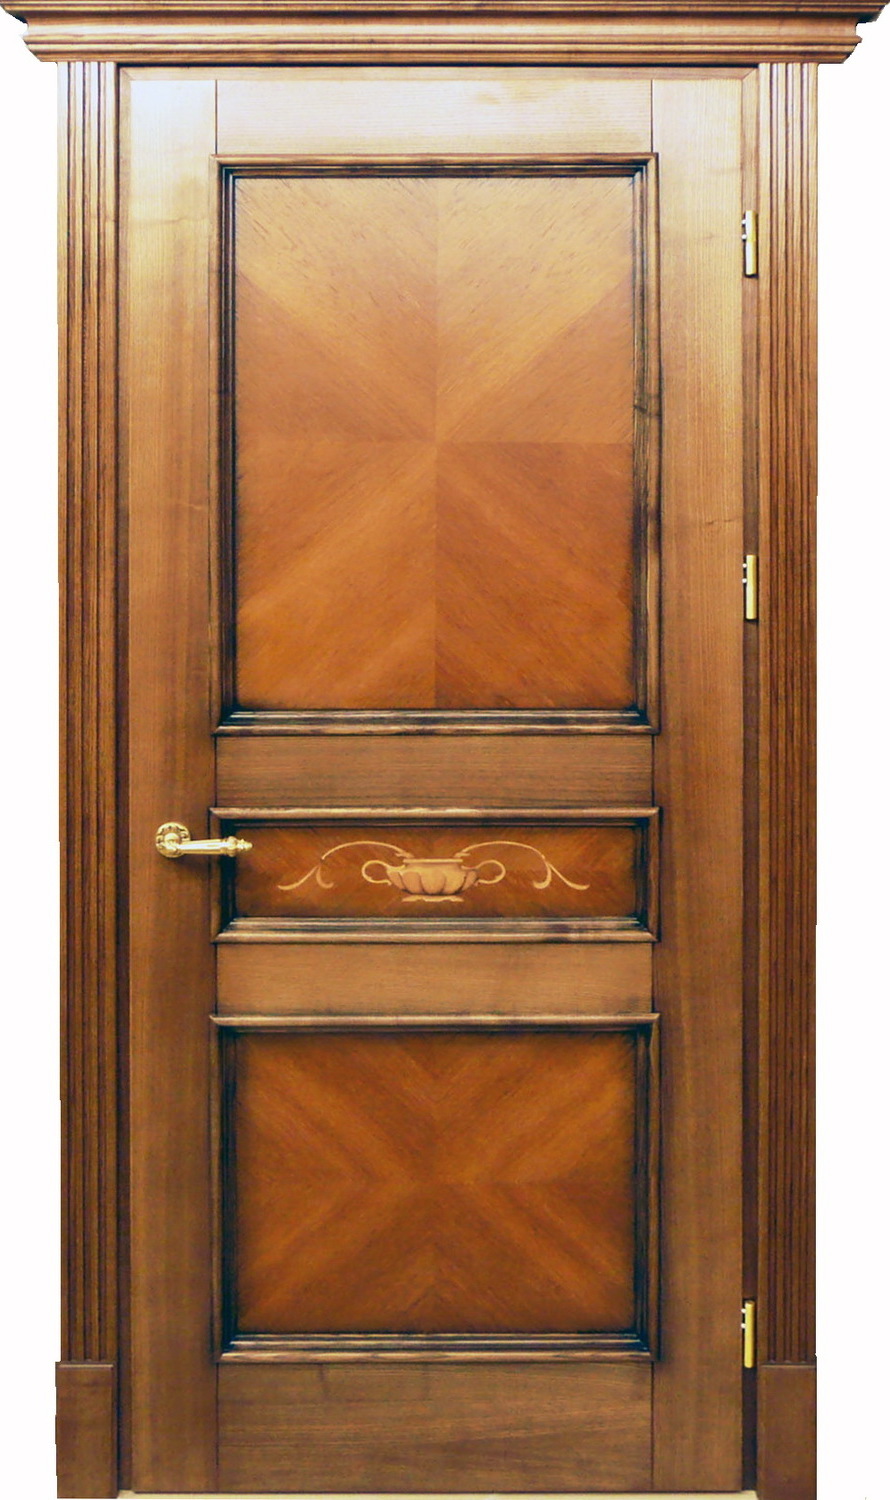 Двери межкомнатные филенчатые, наличники с канилюрами, на филенке мозаика из шпона